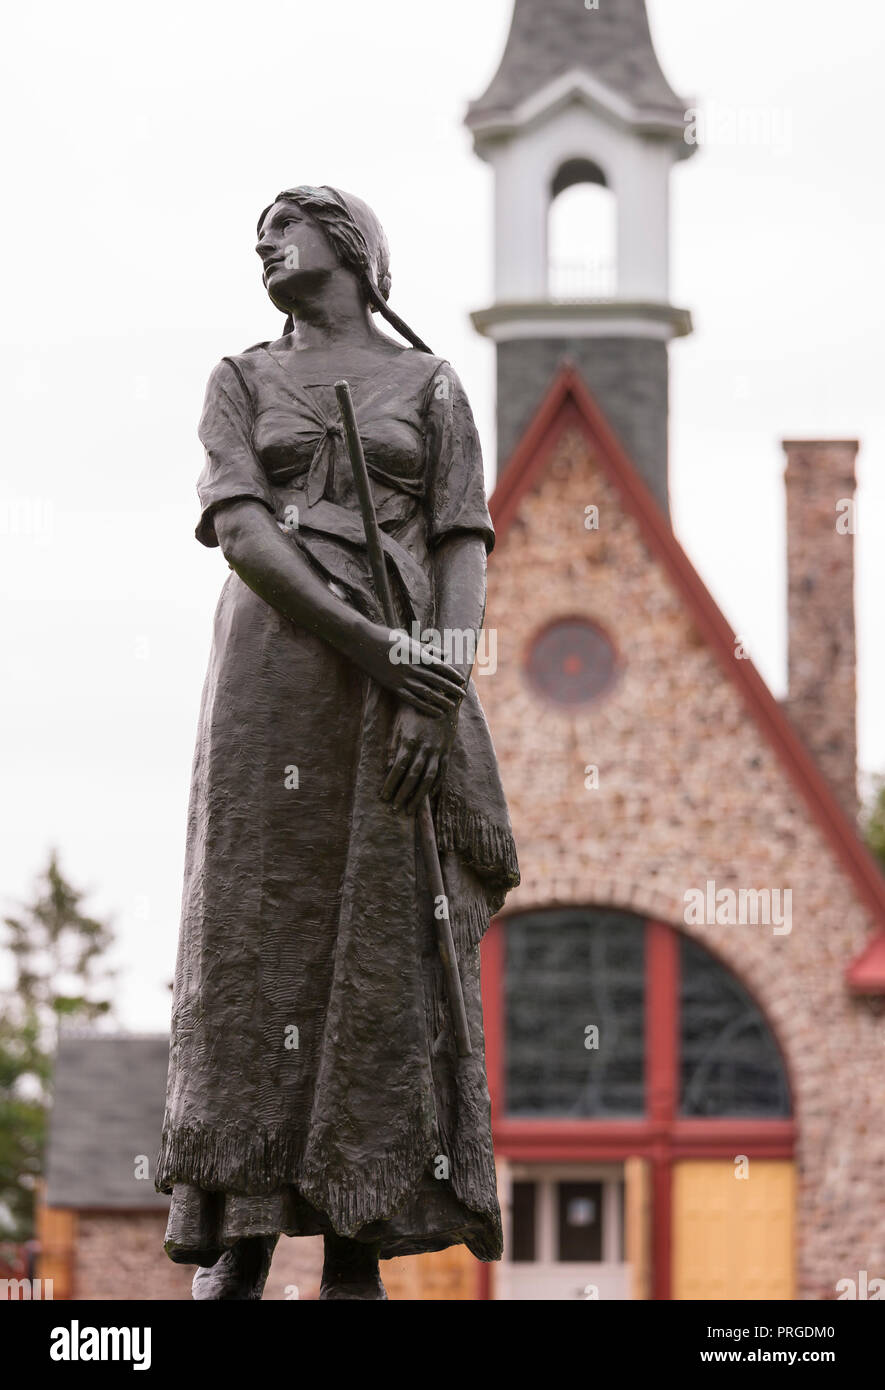 GRAND-PRE, Nova Scotia, Kanada - Statue von Evangeline, in Erinnerung an die Deportation der französischen Kanadier. Stockfoto